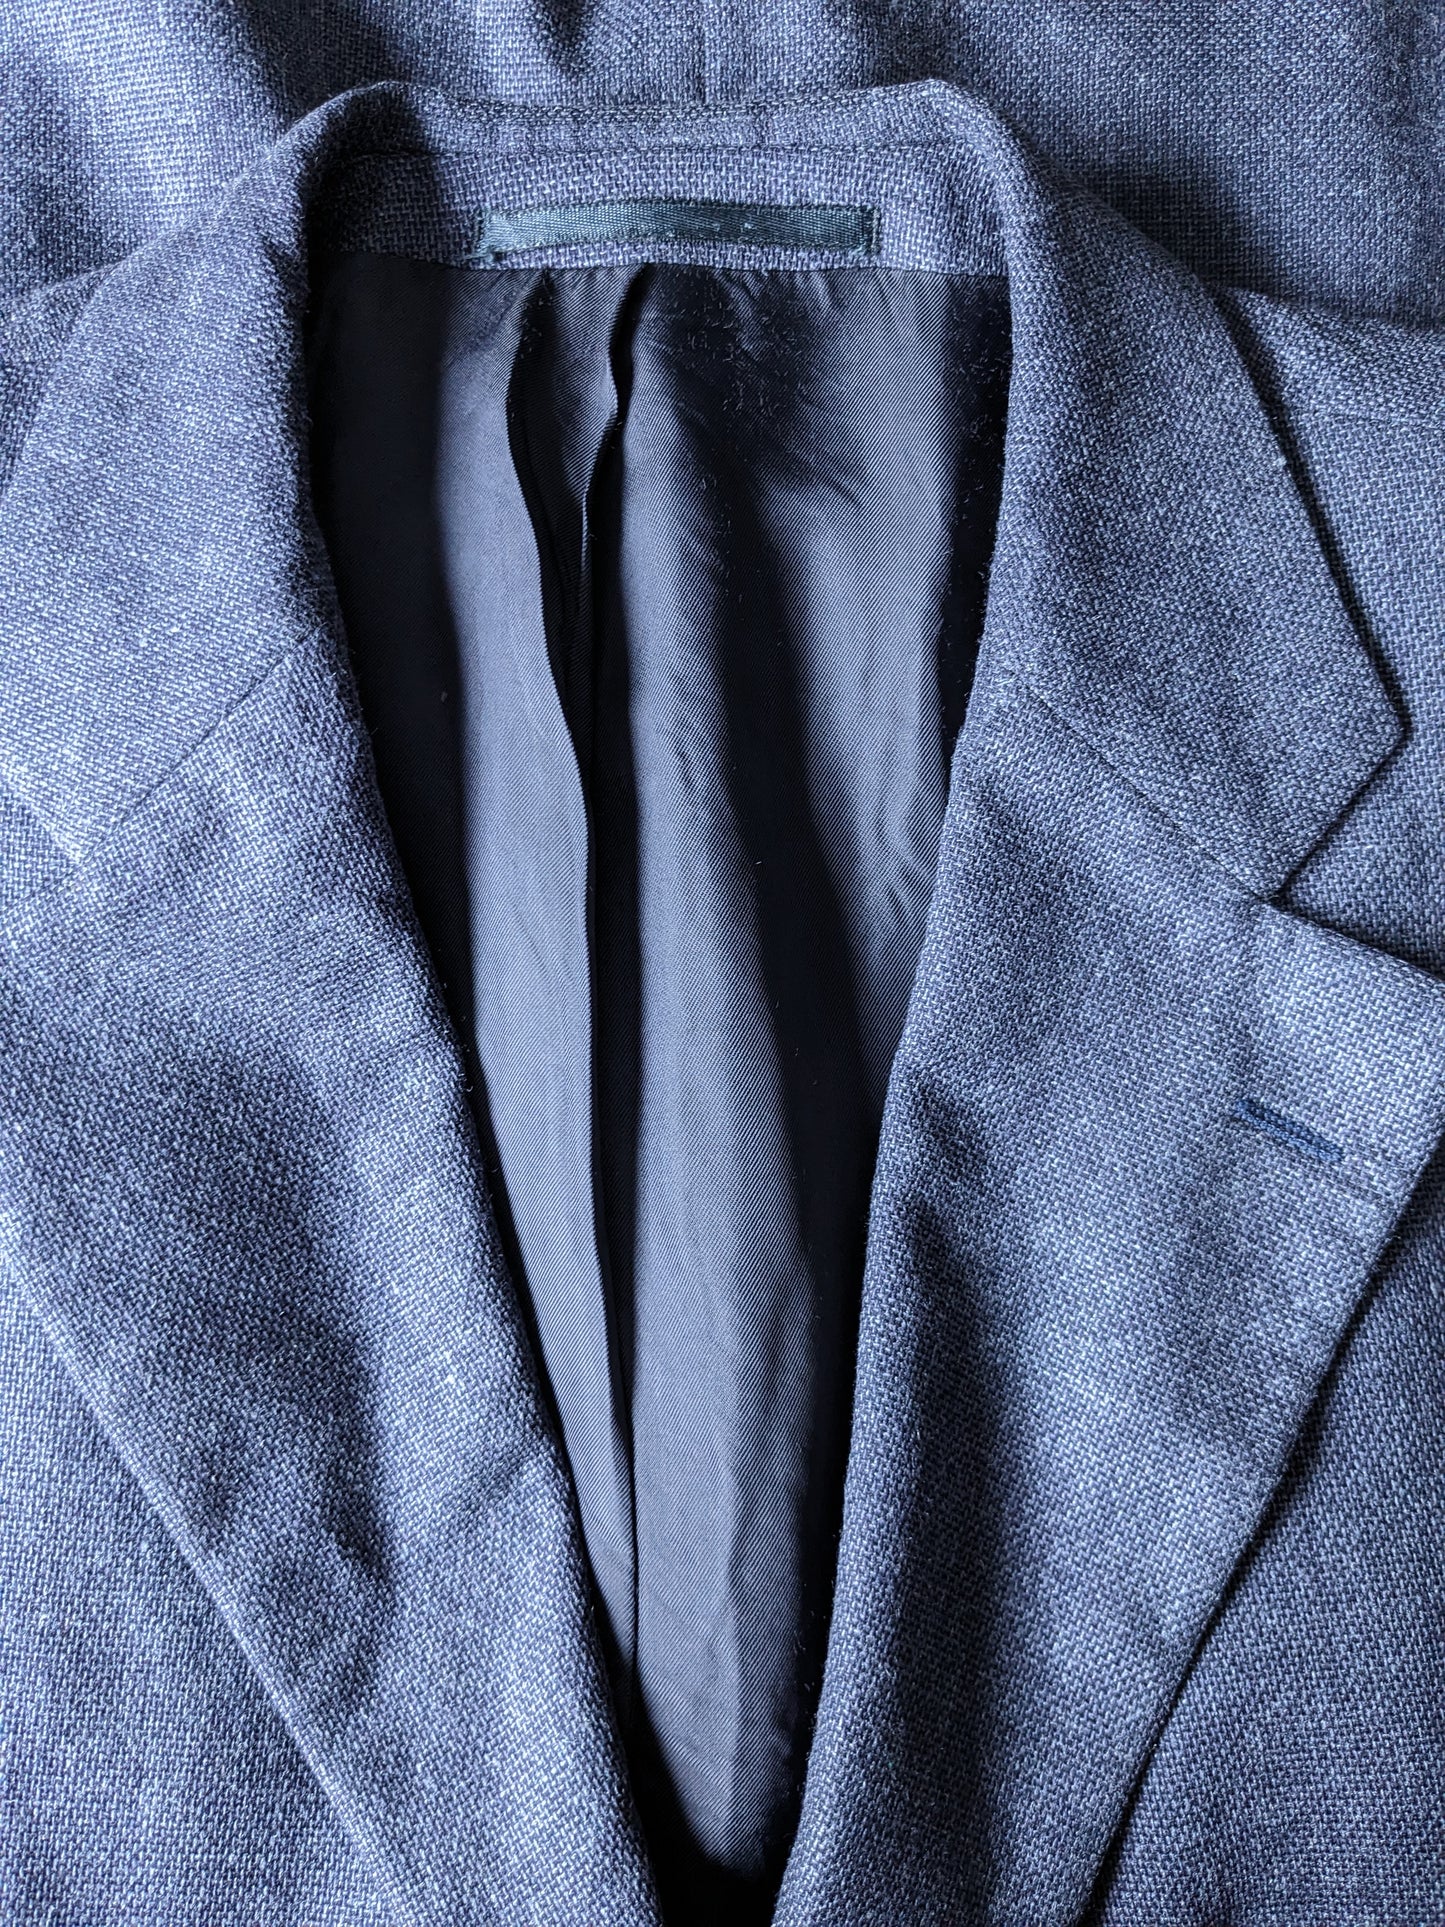 Veste en soie en laine McGregor. Bleu noir mélangé. Taille 27 (54 / L).